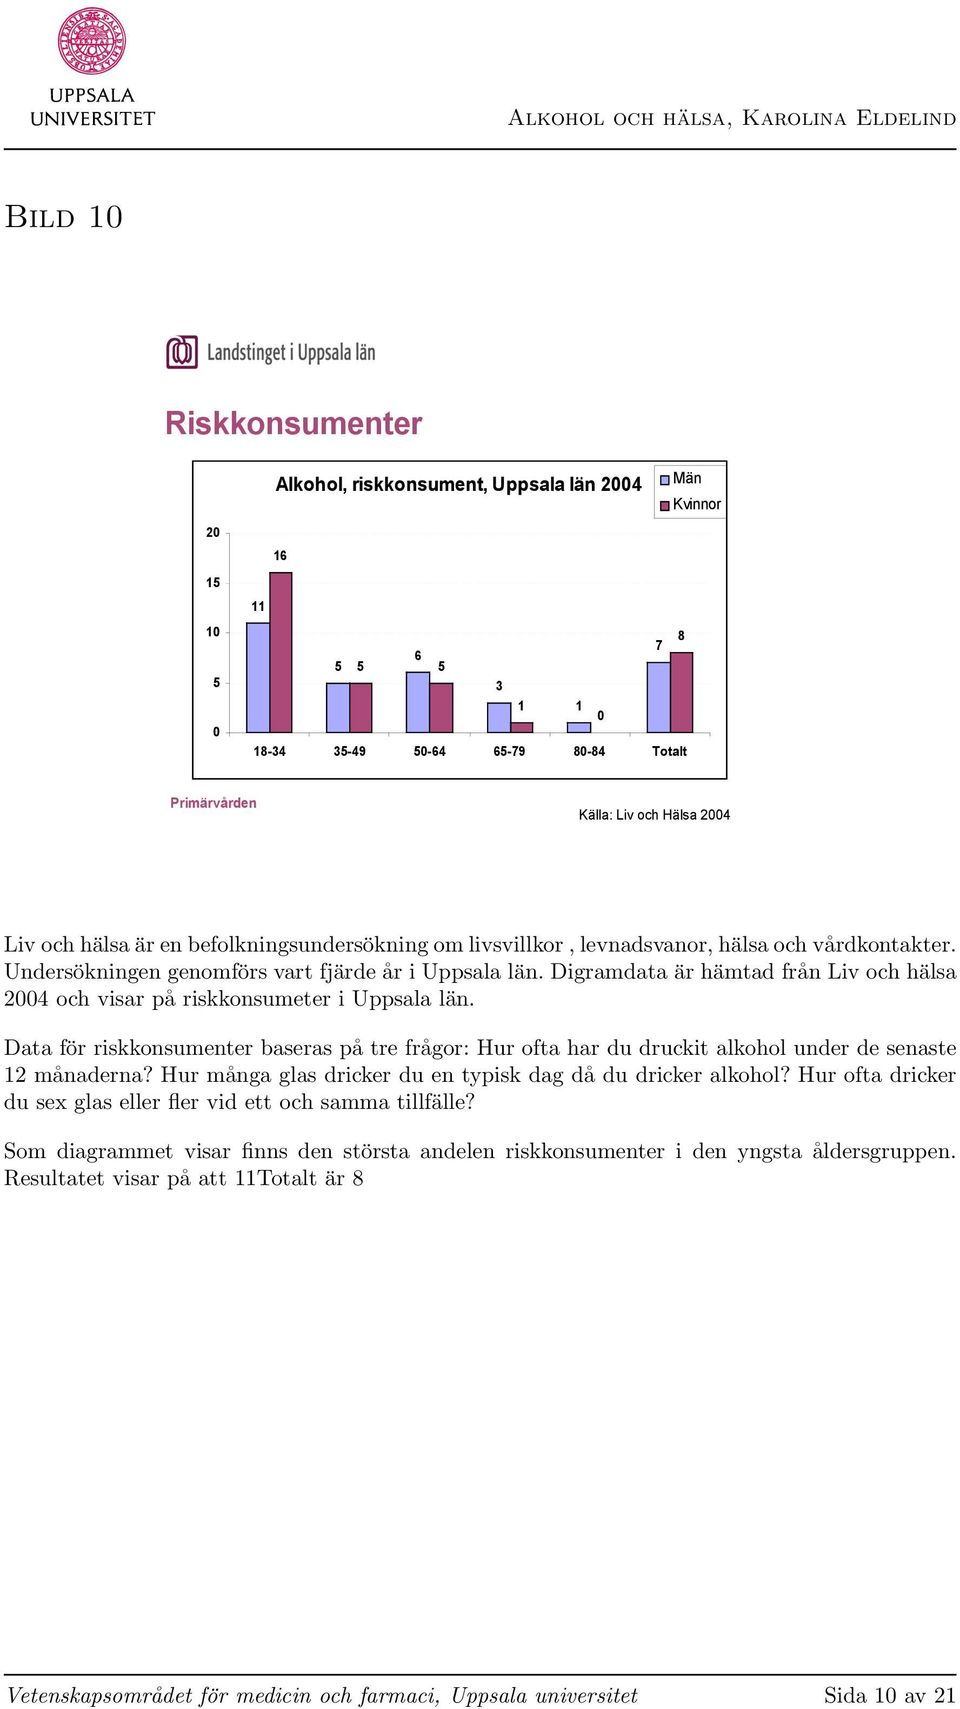 Digramdata är hämtad från Liv och hälsa 2004 och visar på riskkonsumeter i Uppsala län. Data för riskkonsumenter baseras på tre frågor: Hur ofta har du druckit alkohol under de senaste 12 månaderna?